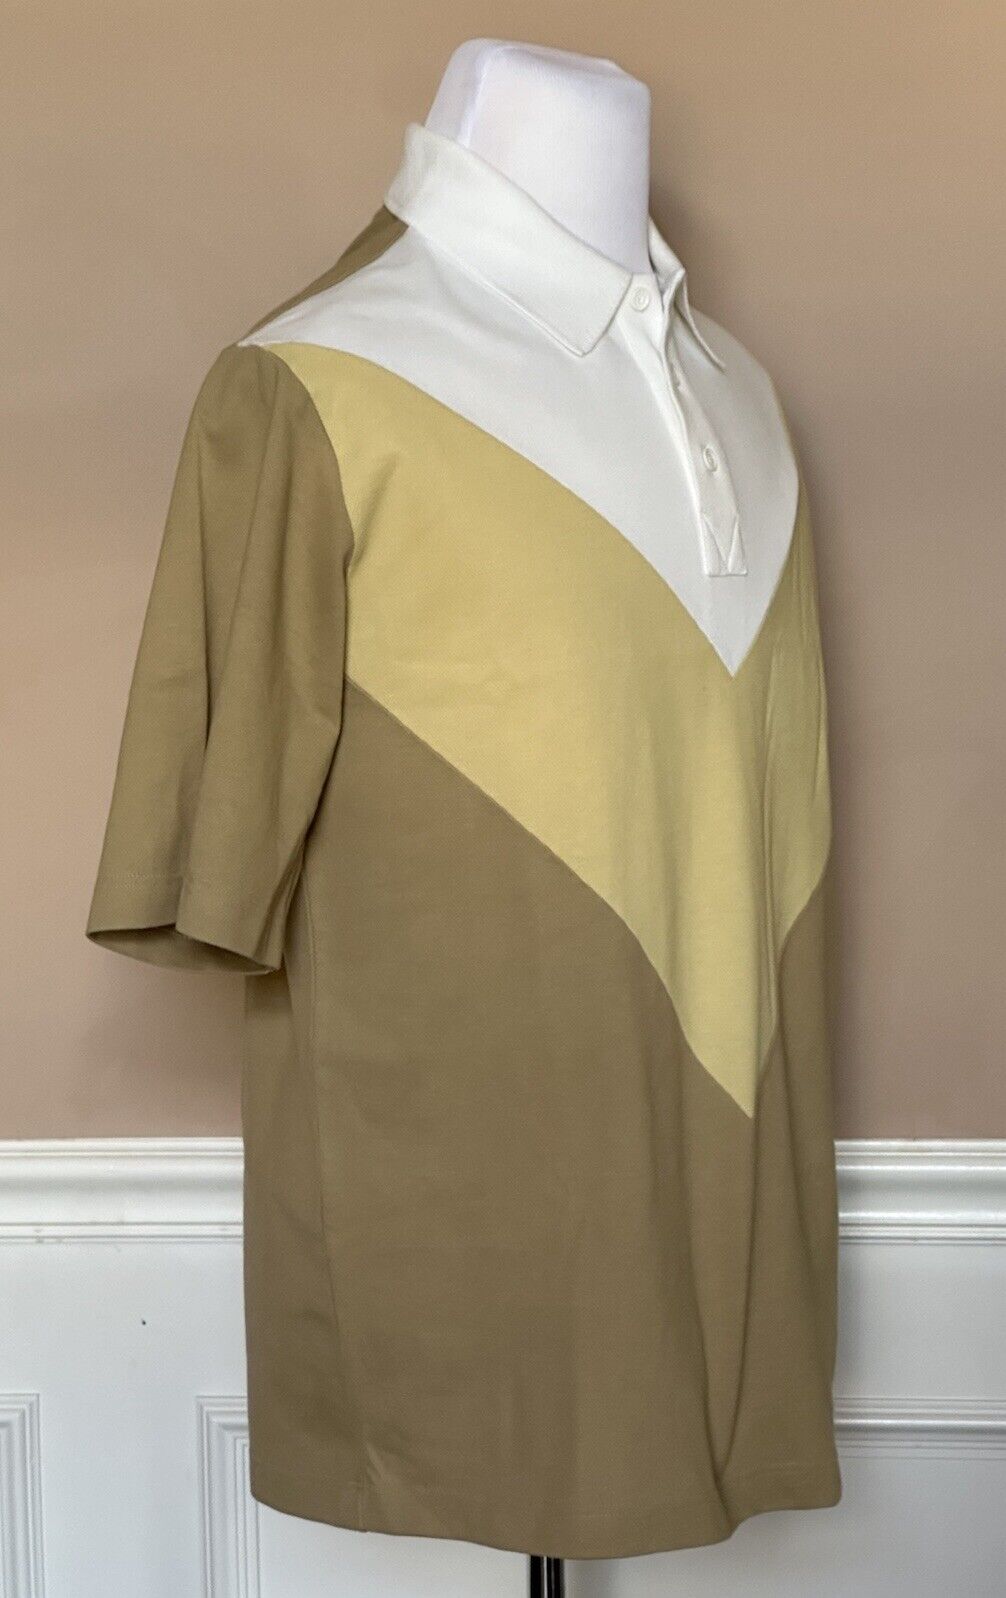 Neu mit Etikett: 700 $ Bottega Veneta Herren-Poloshirt aus Baumwoll-Piquet S (Oversized Fit) 704205 